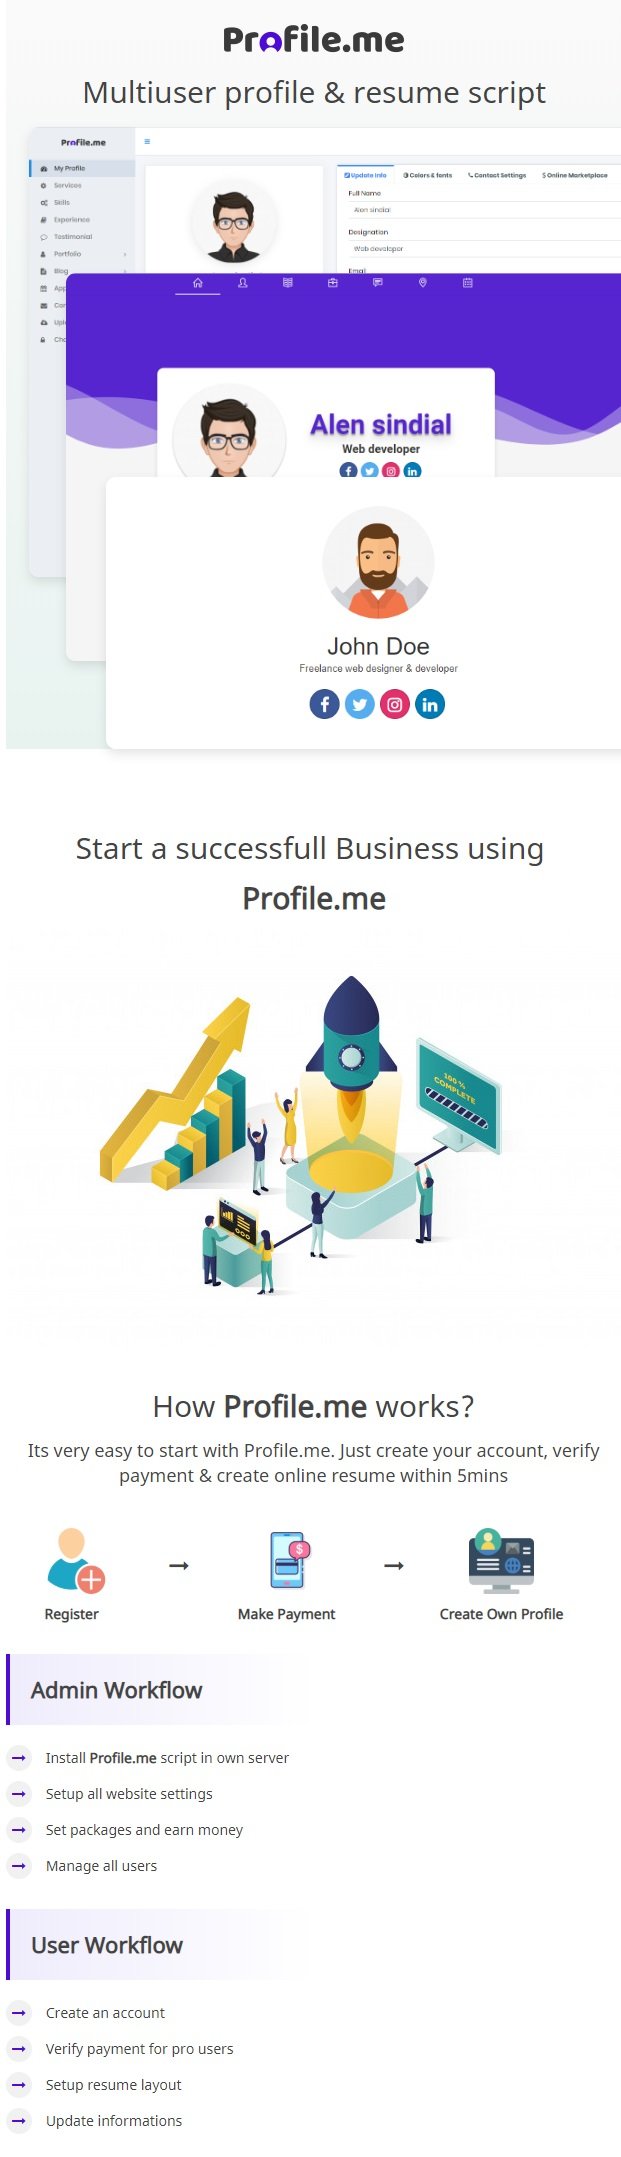 Profile.me - Saas Multiuser Profile Resume & Vcard Script - 4